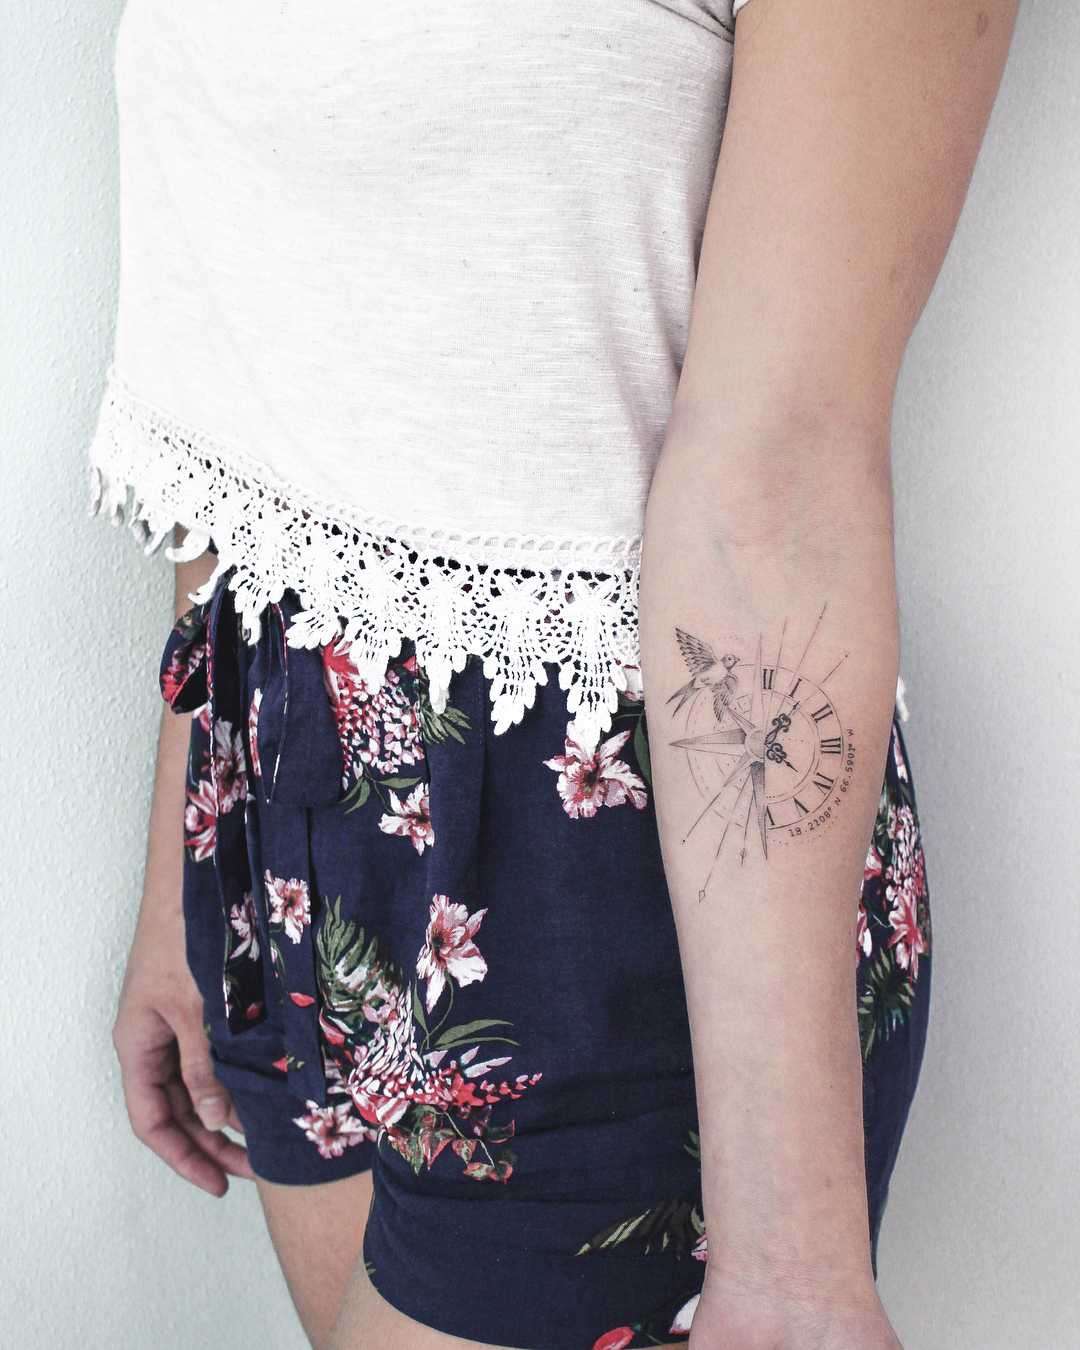 Clock and bird tattoo - Tattoogrid.net